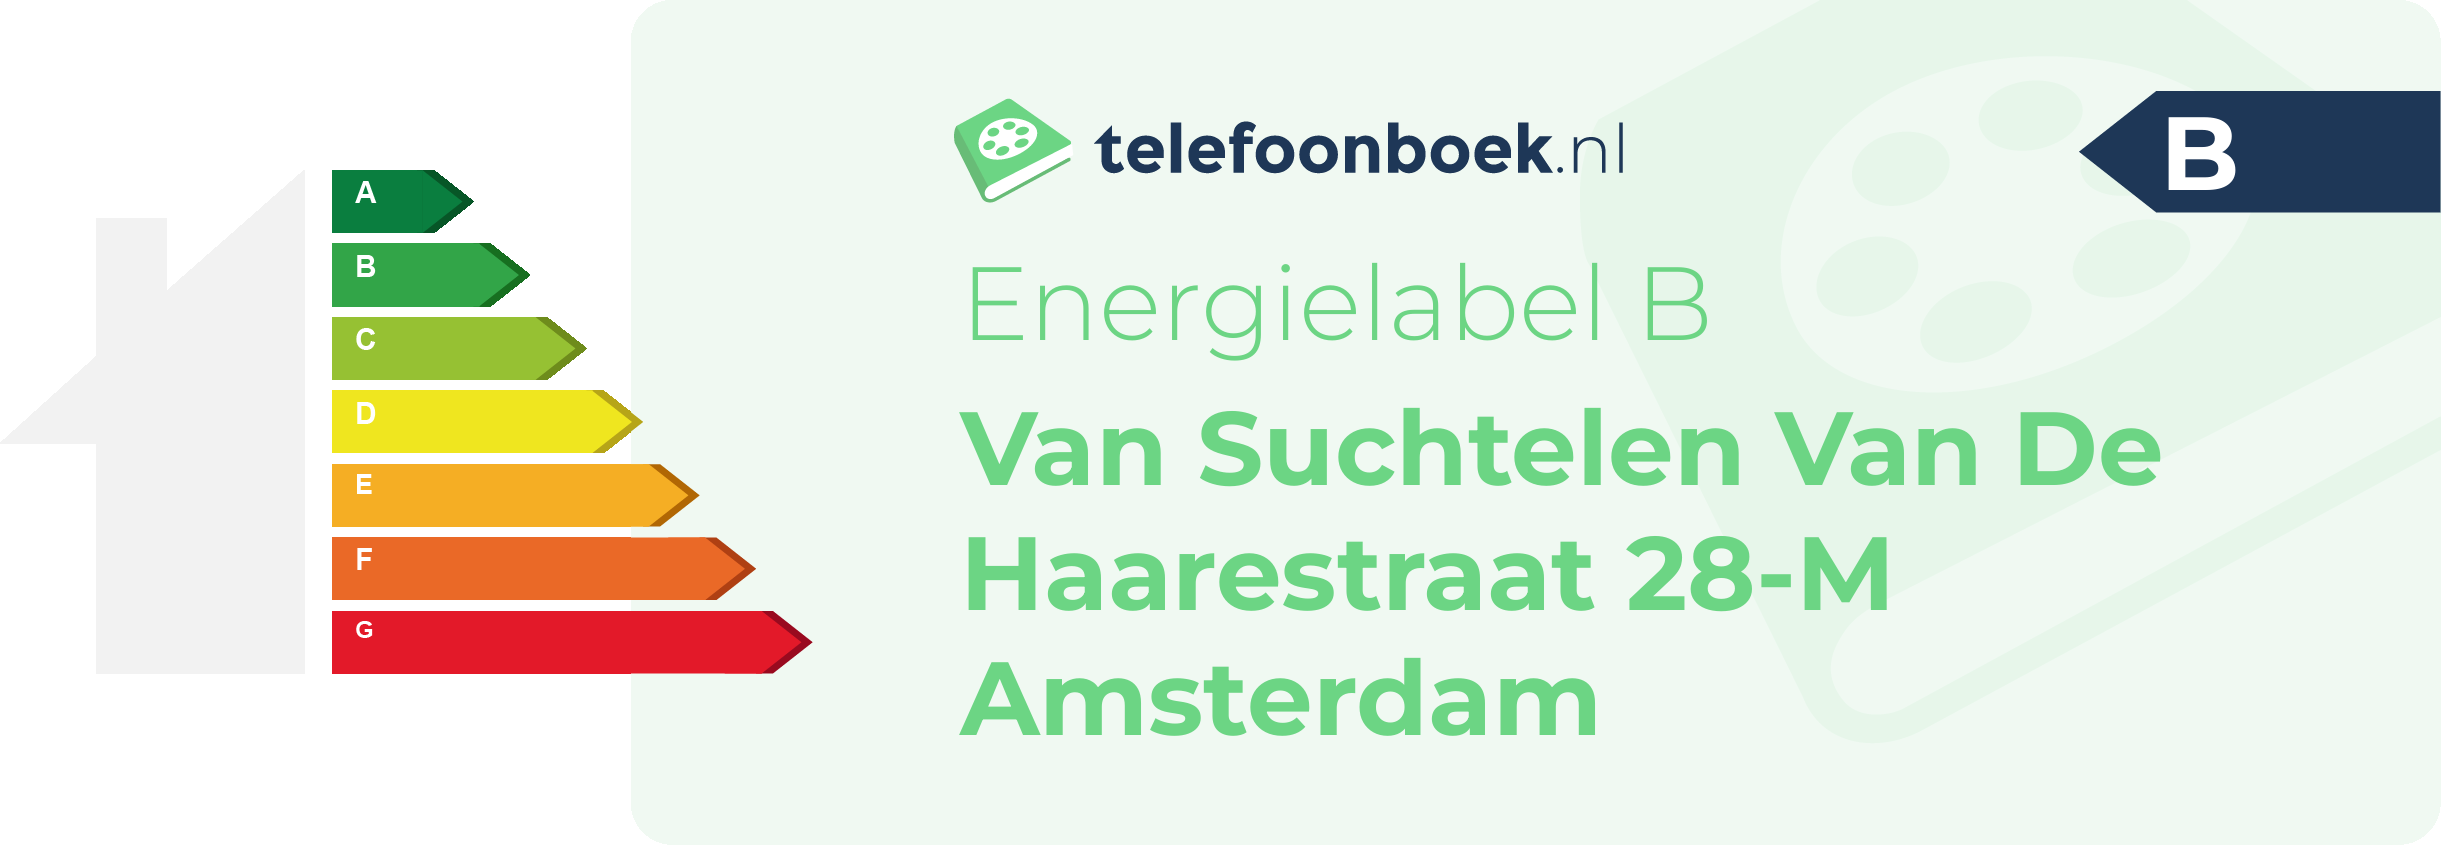 Energielabel Van Suchtelen Van De Haarestraat 28-M Amsterdam